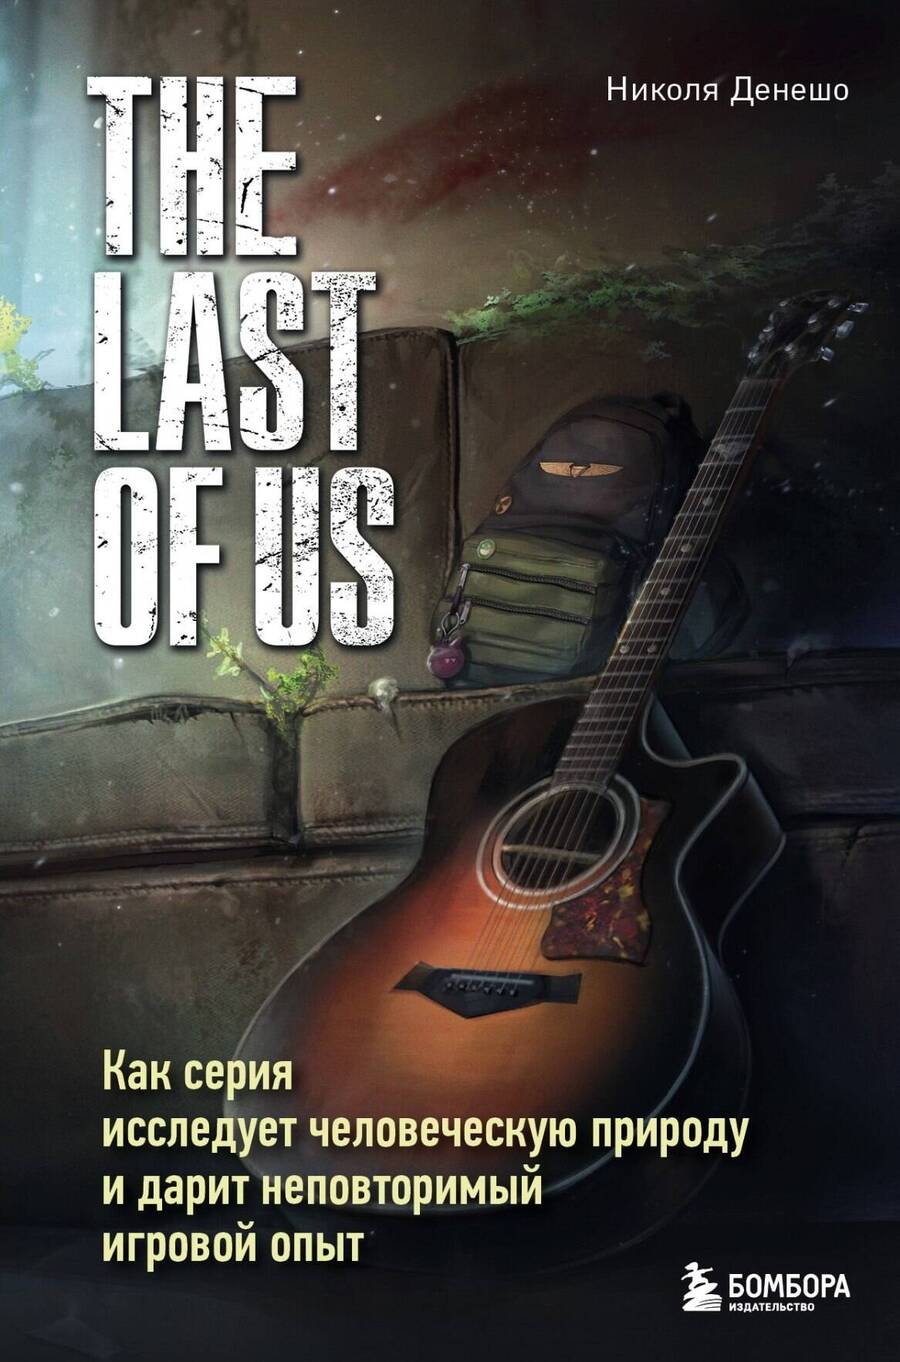 Обложка книги "Денешо: The Last of Us. Как серия исследует человеческую природу и дарит неповторимый игровой опыт"